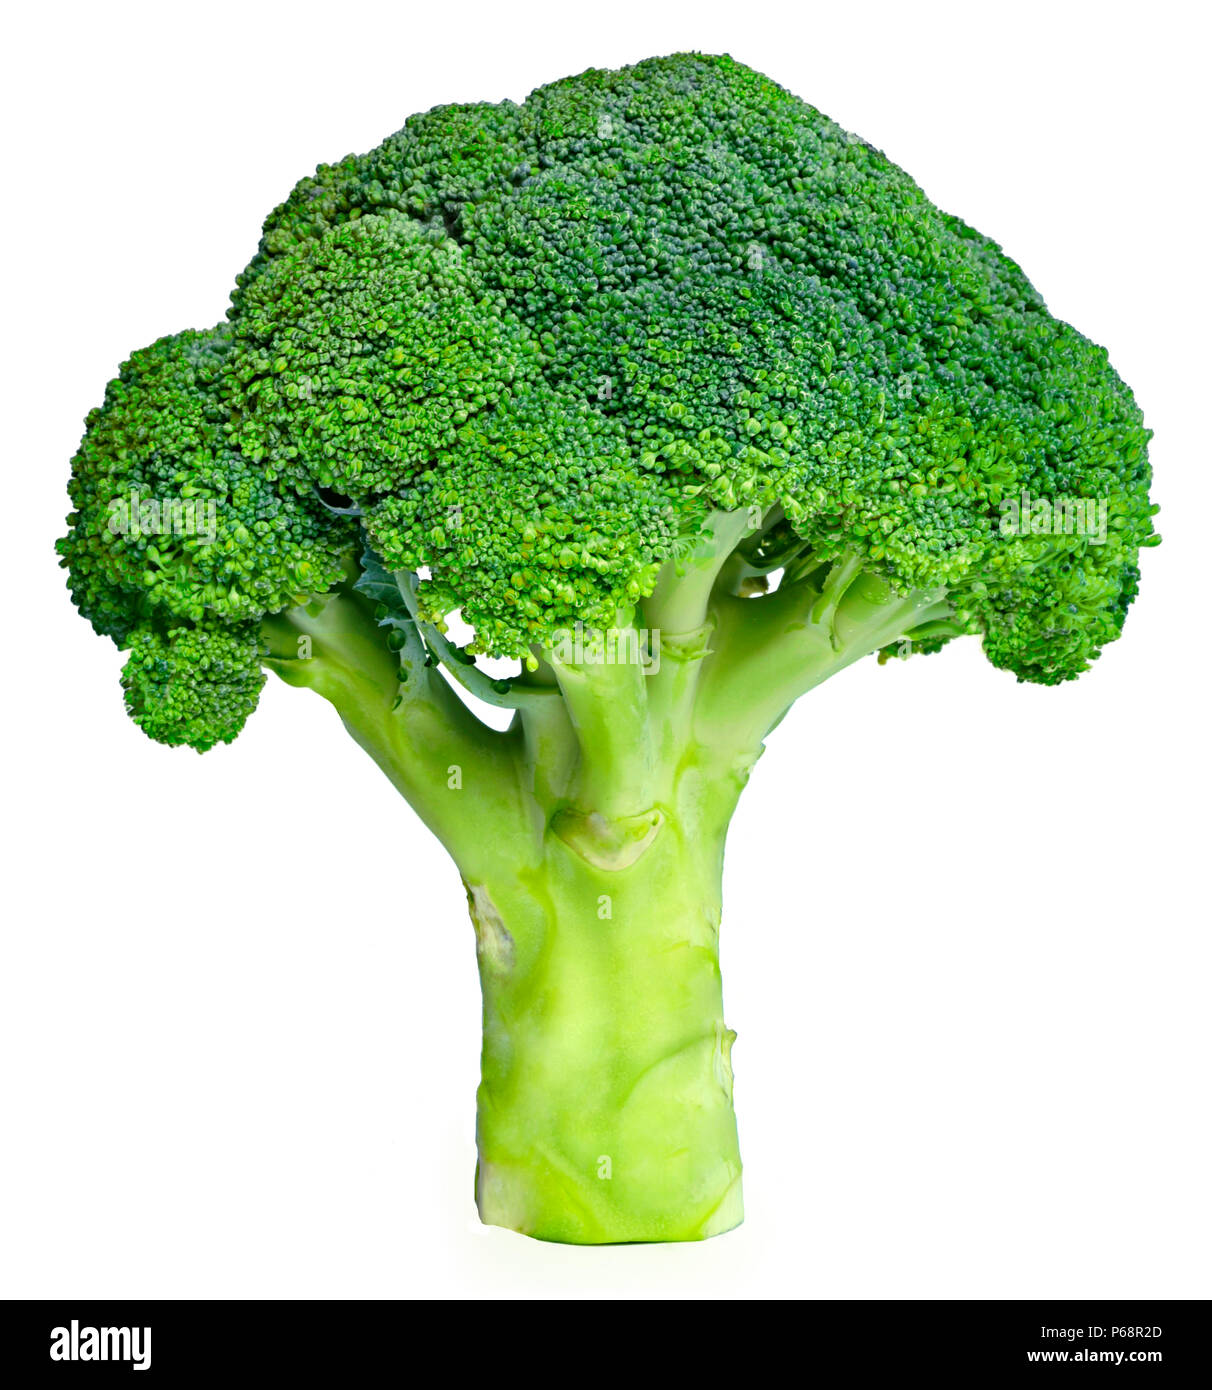 Frisches Grün Brokkoli, auf weißem Hintergrund. Reif, Gemüse, gesunde Ernährung. Brokkoli, kochen Zutat mit Vitaminen und wenig Kalorien. Stockfoto